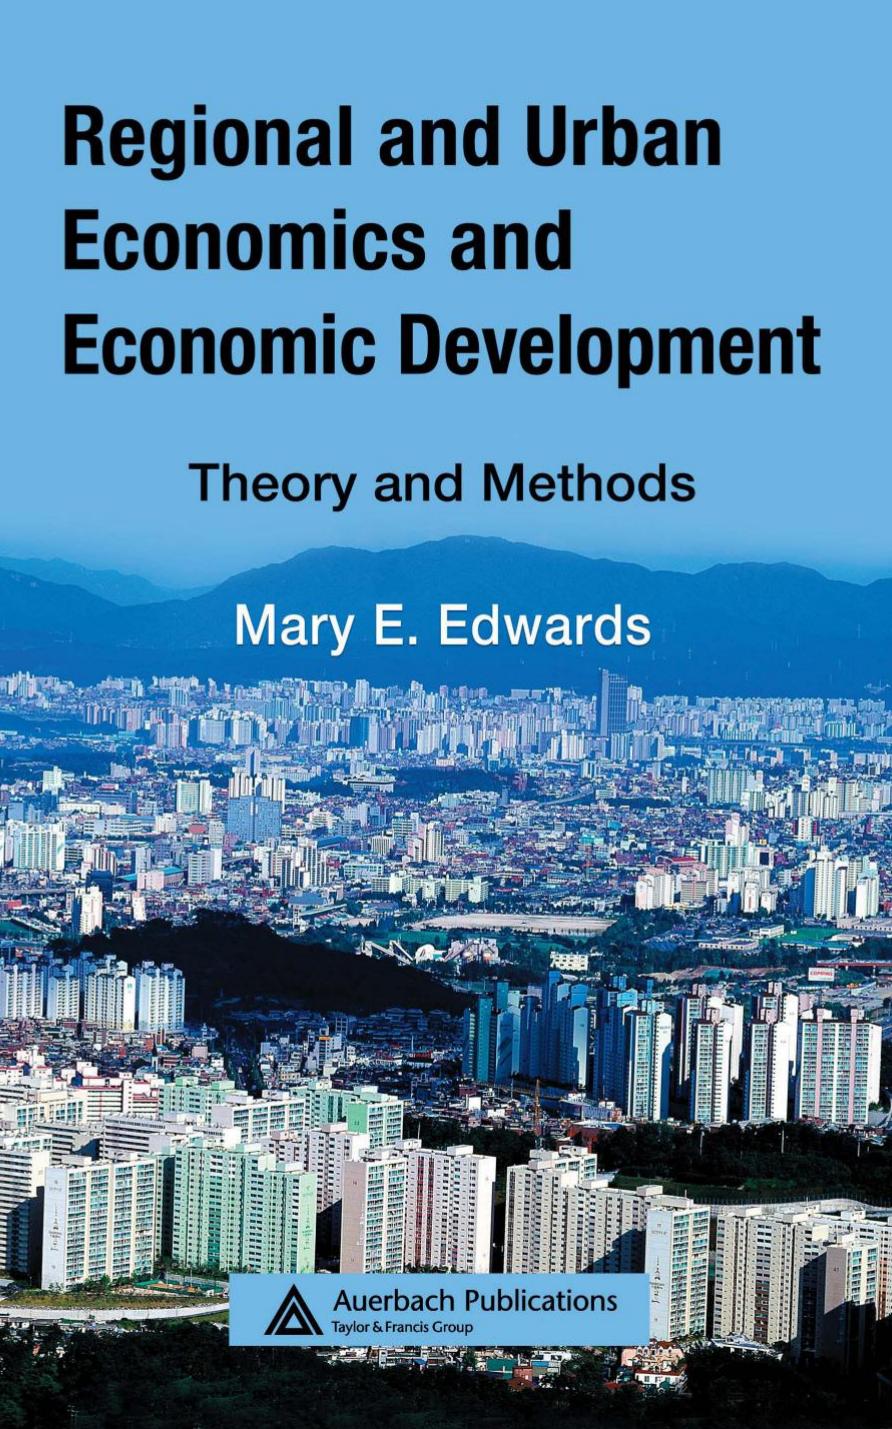 Regional and Urban Economics and Economic Development